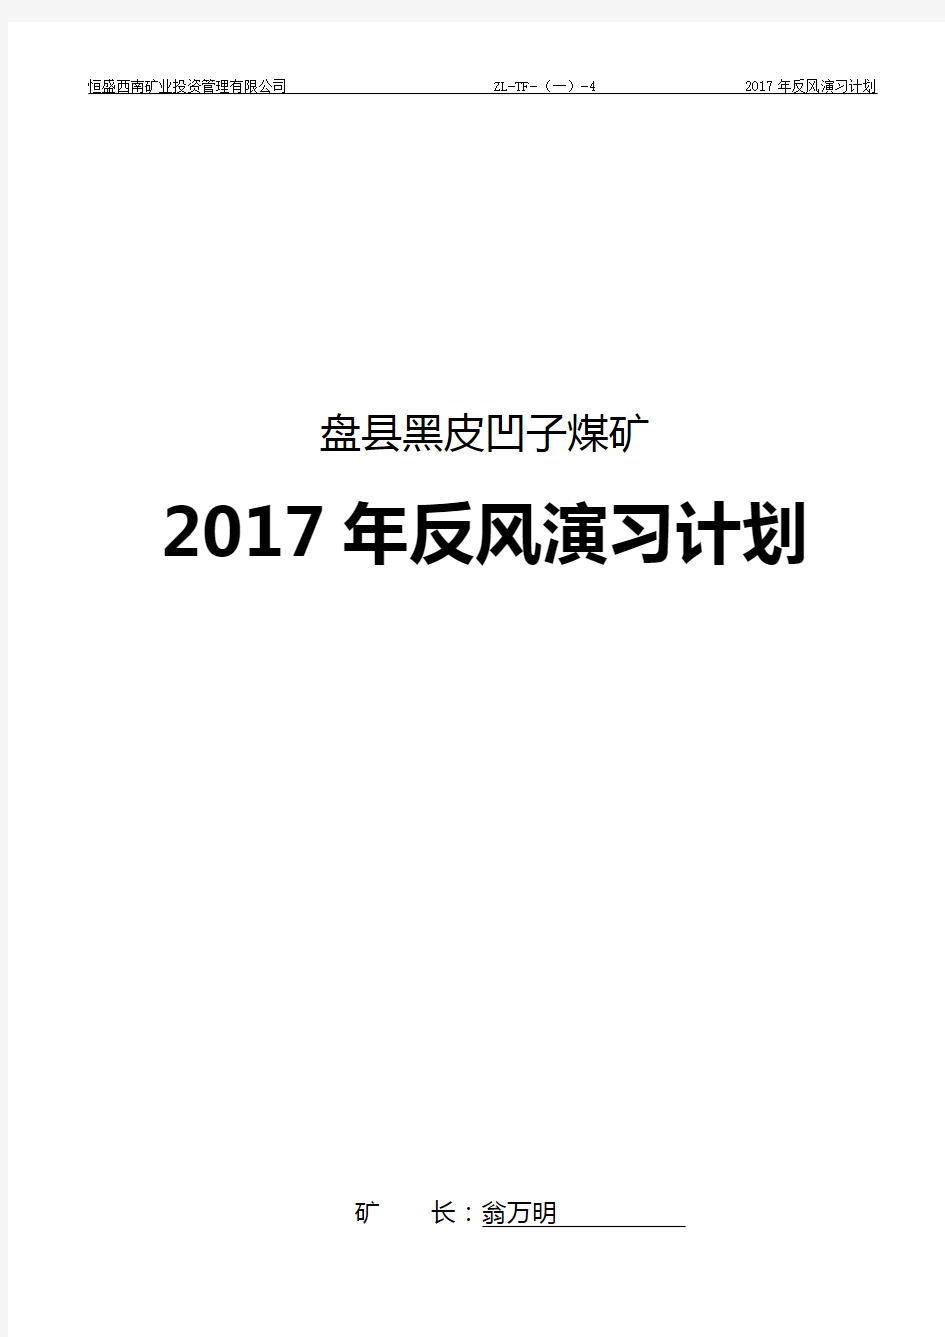 2017年度矿井反风演习计划